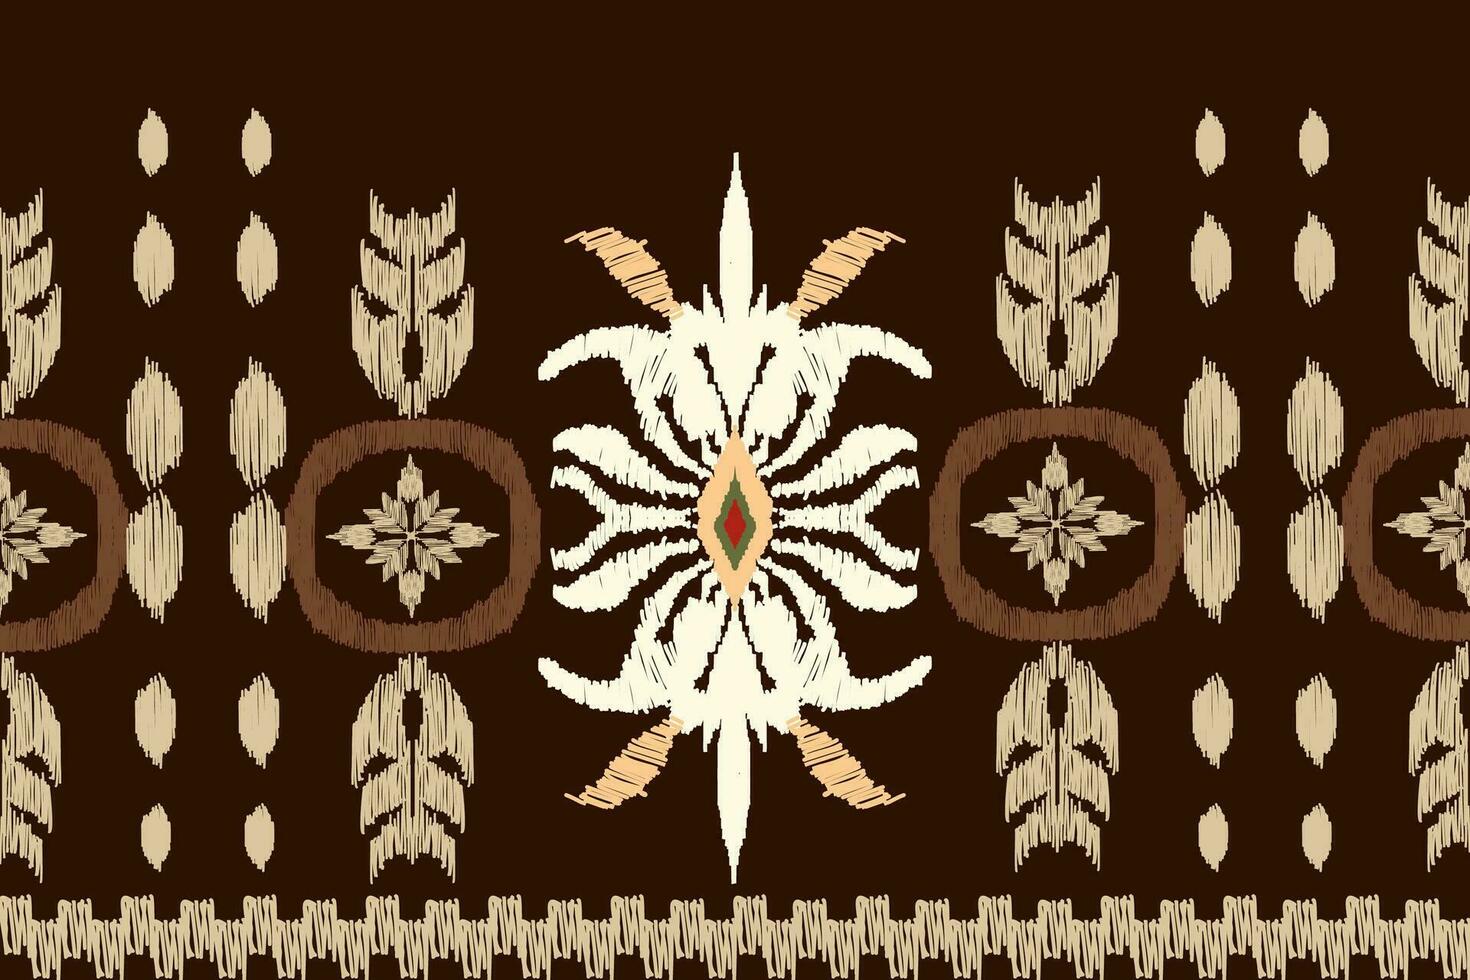 africano ikat paisley ricamo su Marrone sfondo.geometrico etnico orientale senza soluzione di continuità modello tradizionale.azteco stile astratto disegno vettoriale per